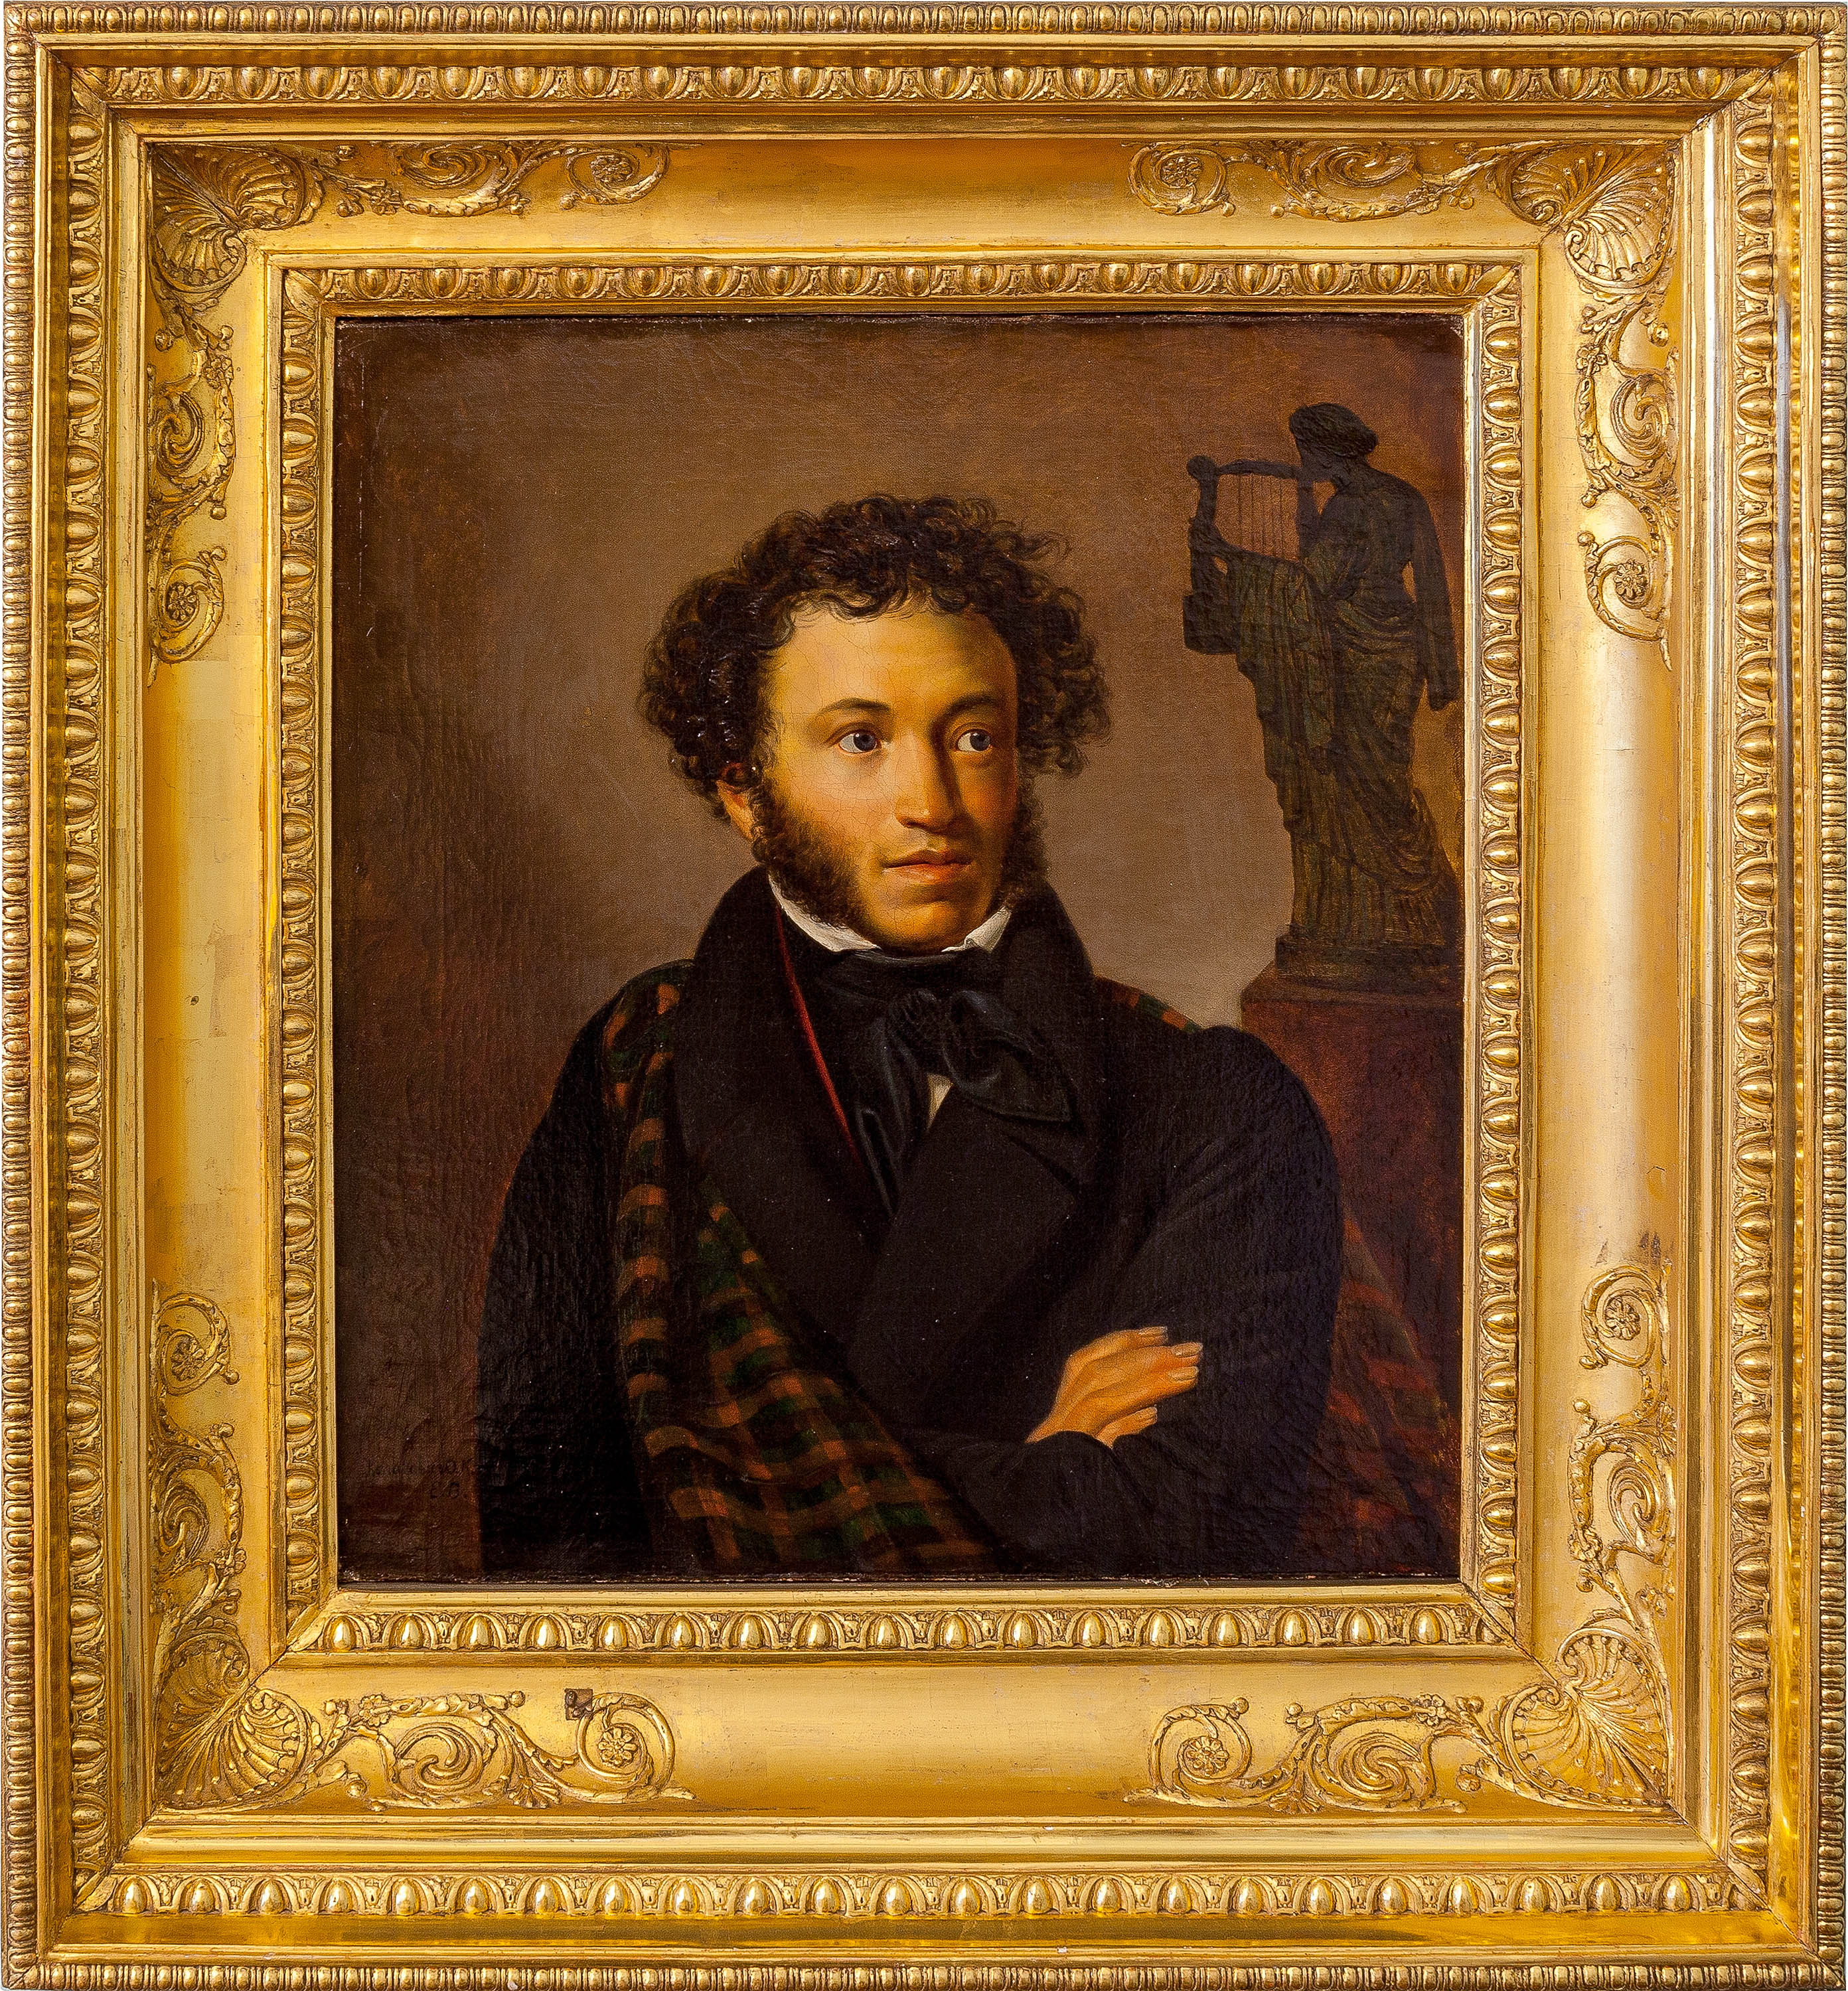 5 знаменитых русских писателей. Кипренский портрет Пушкина 1827.